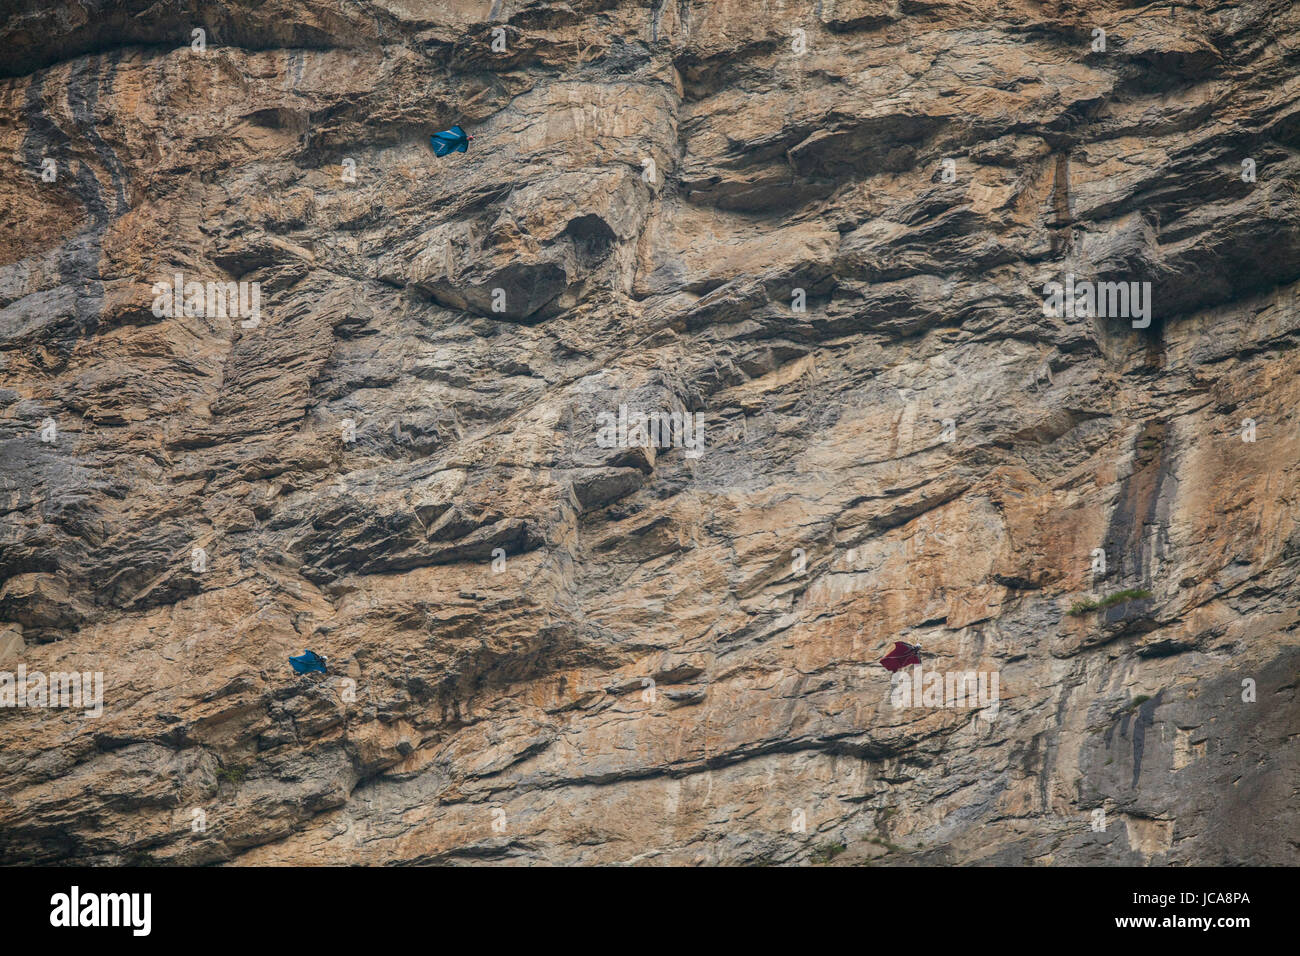 Drei base-Jumper im Flug mit riesigen Felsen Wand im Hintergrund.  Toggenburg, Schweiz. Stockfoto